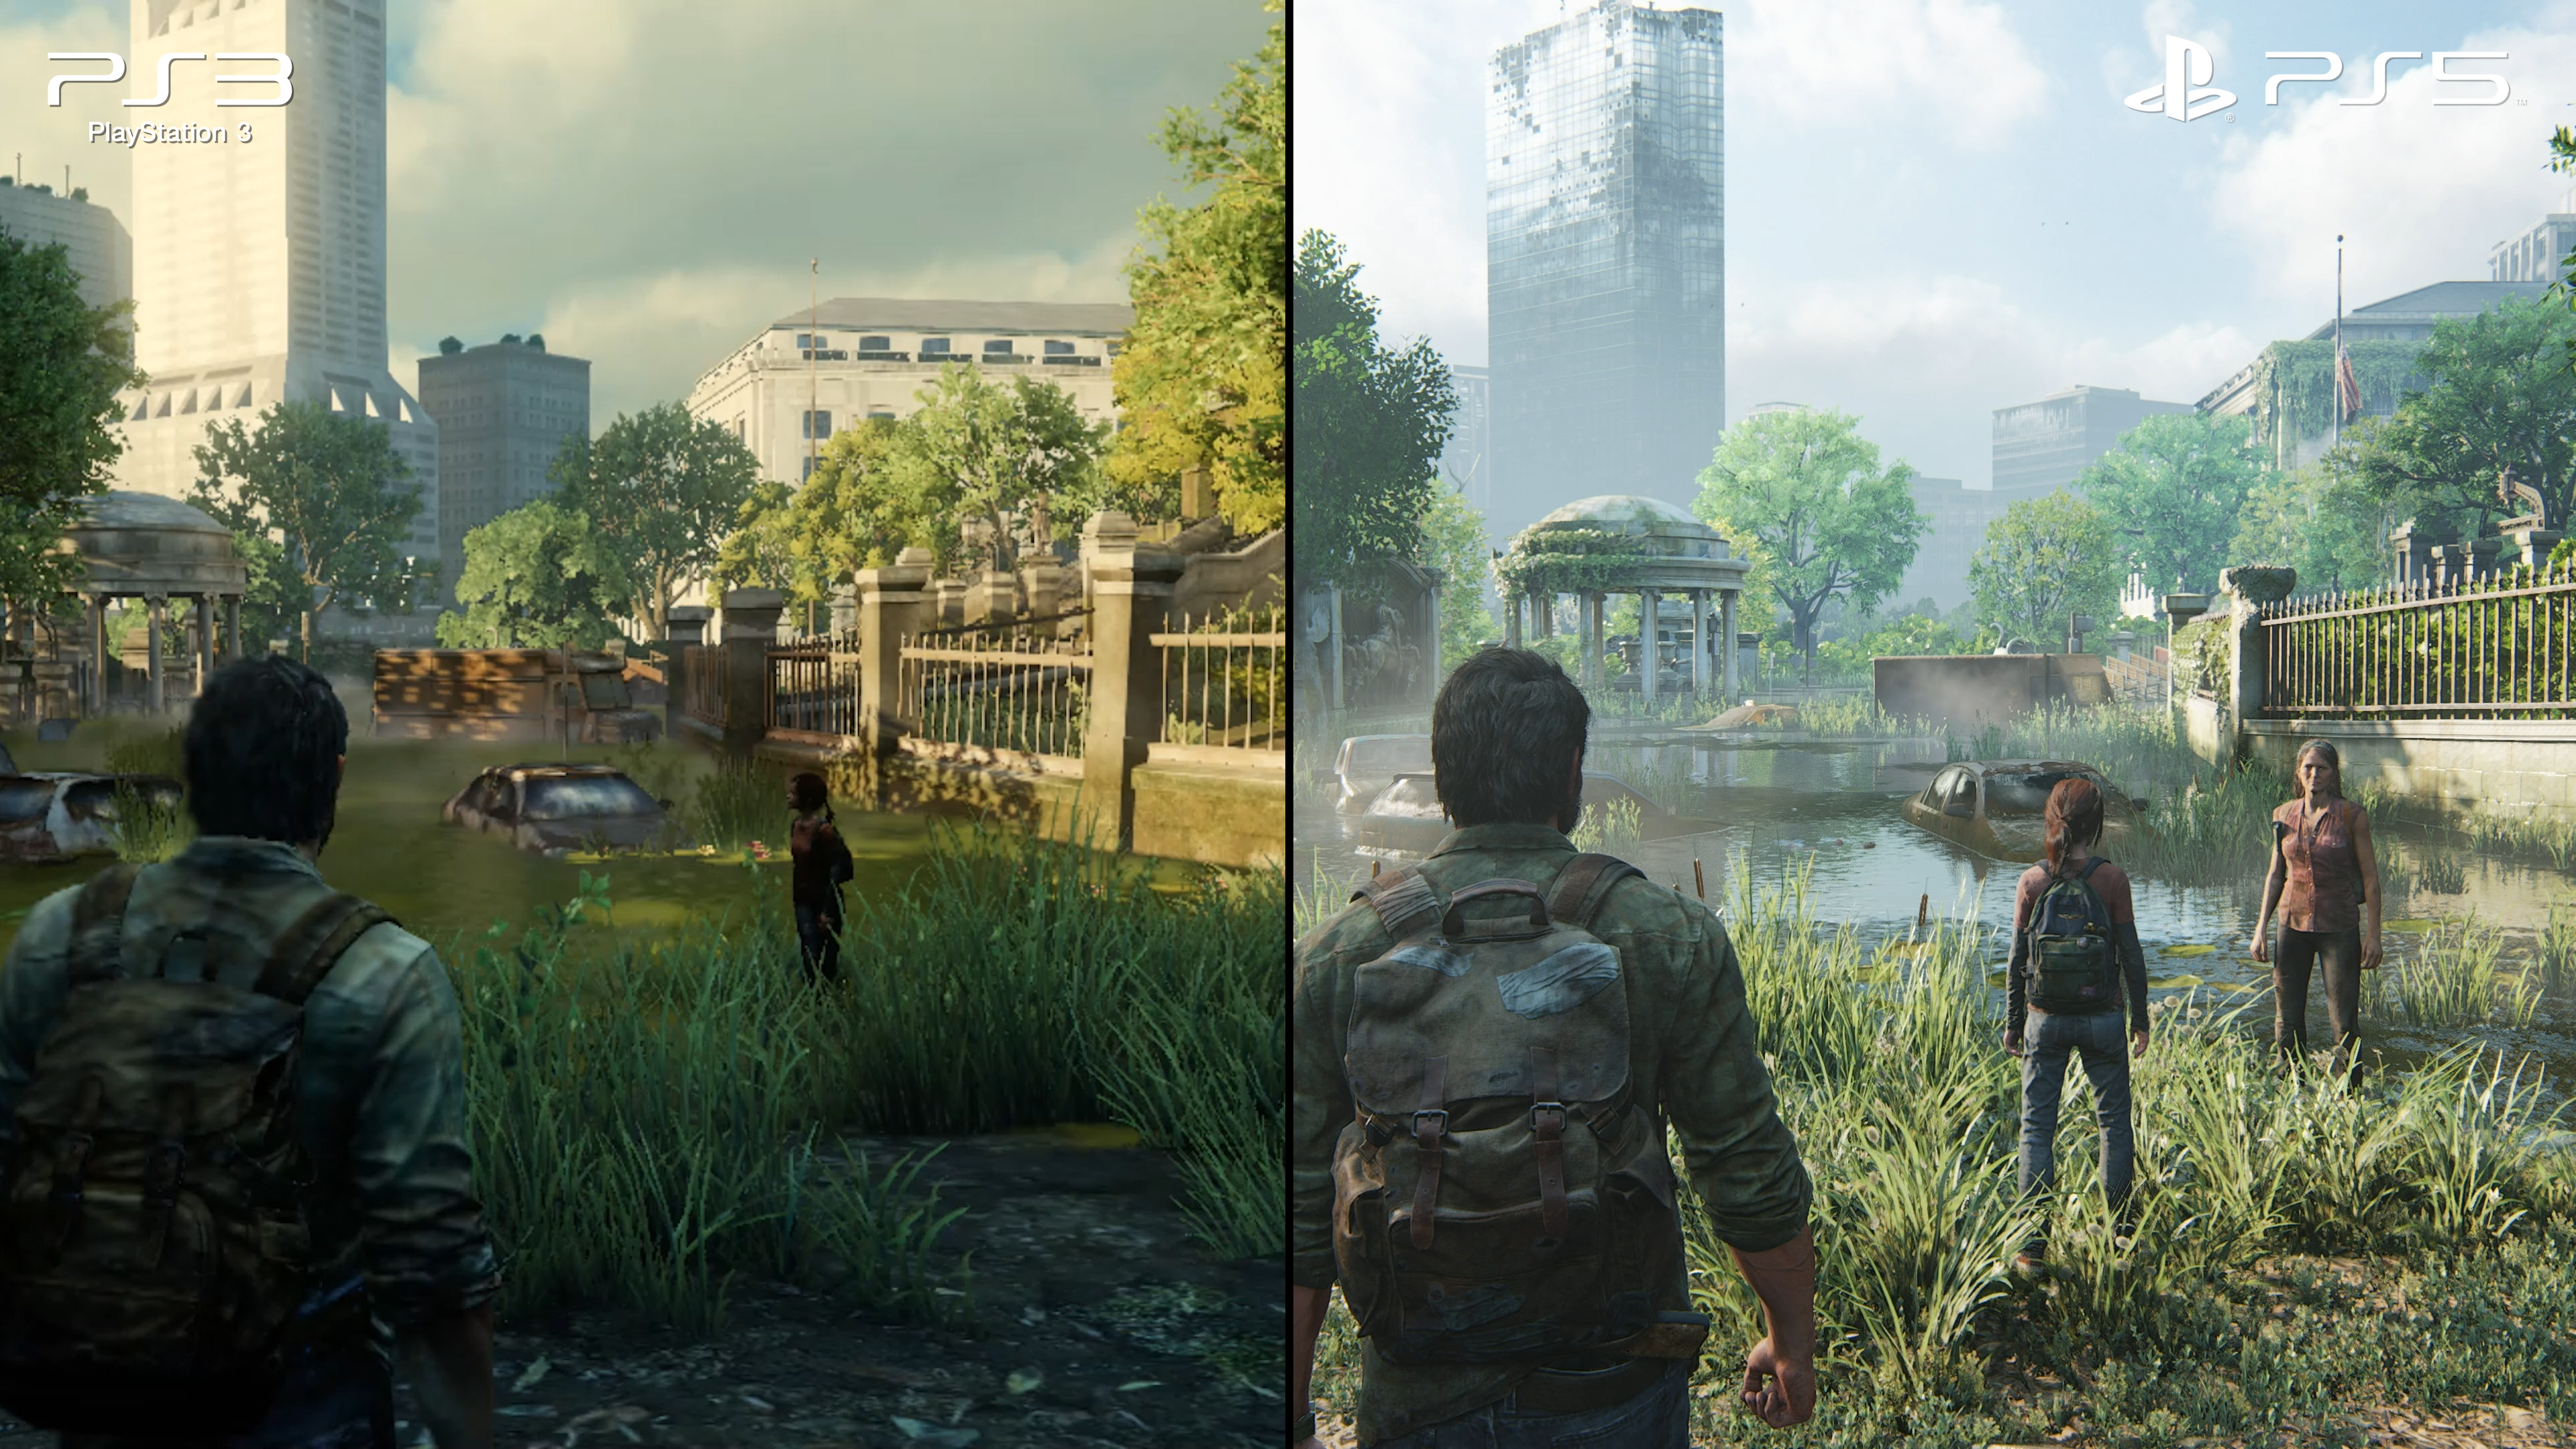 The Last Of Us: Part I - Steam Verde Edition - Jogos (Mídia Digital) - DFG